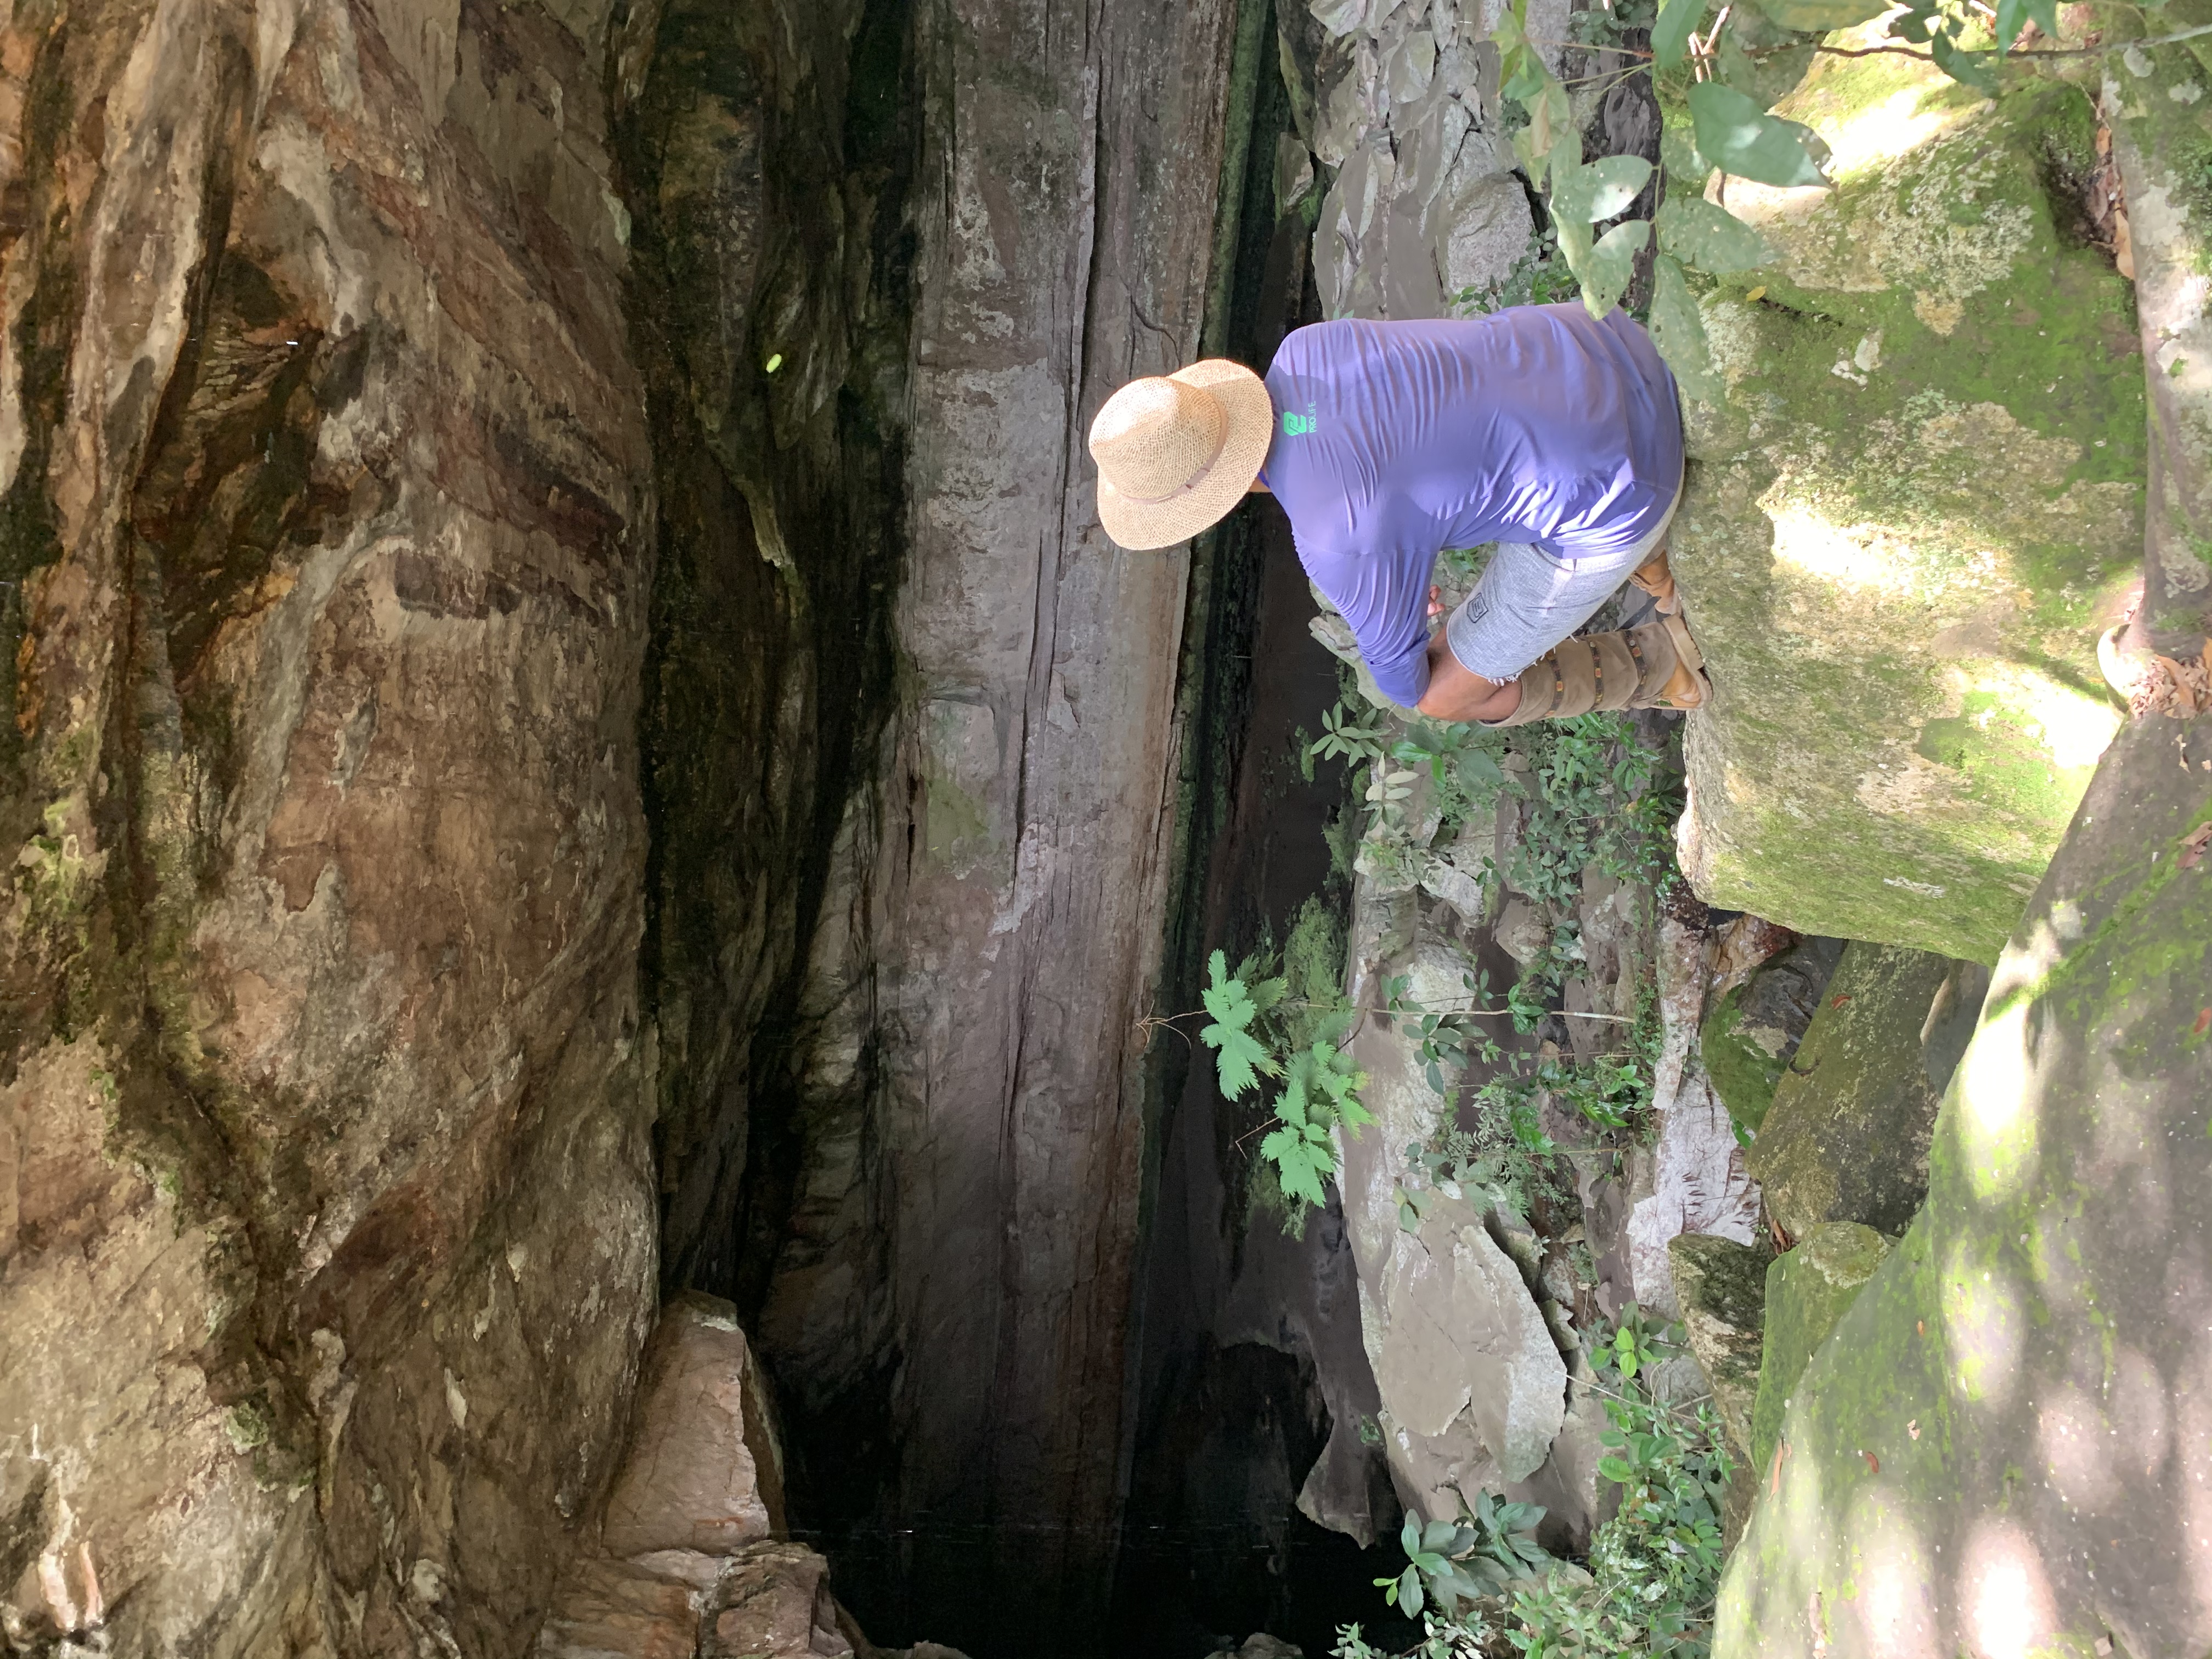 Caverna Aroe Jari, significa “morada das almas” a maior caverna do Brasil de arenito mais de 1500m